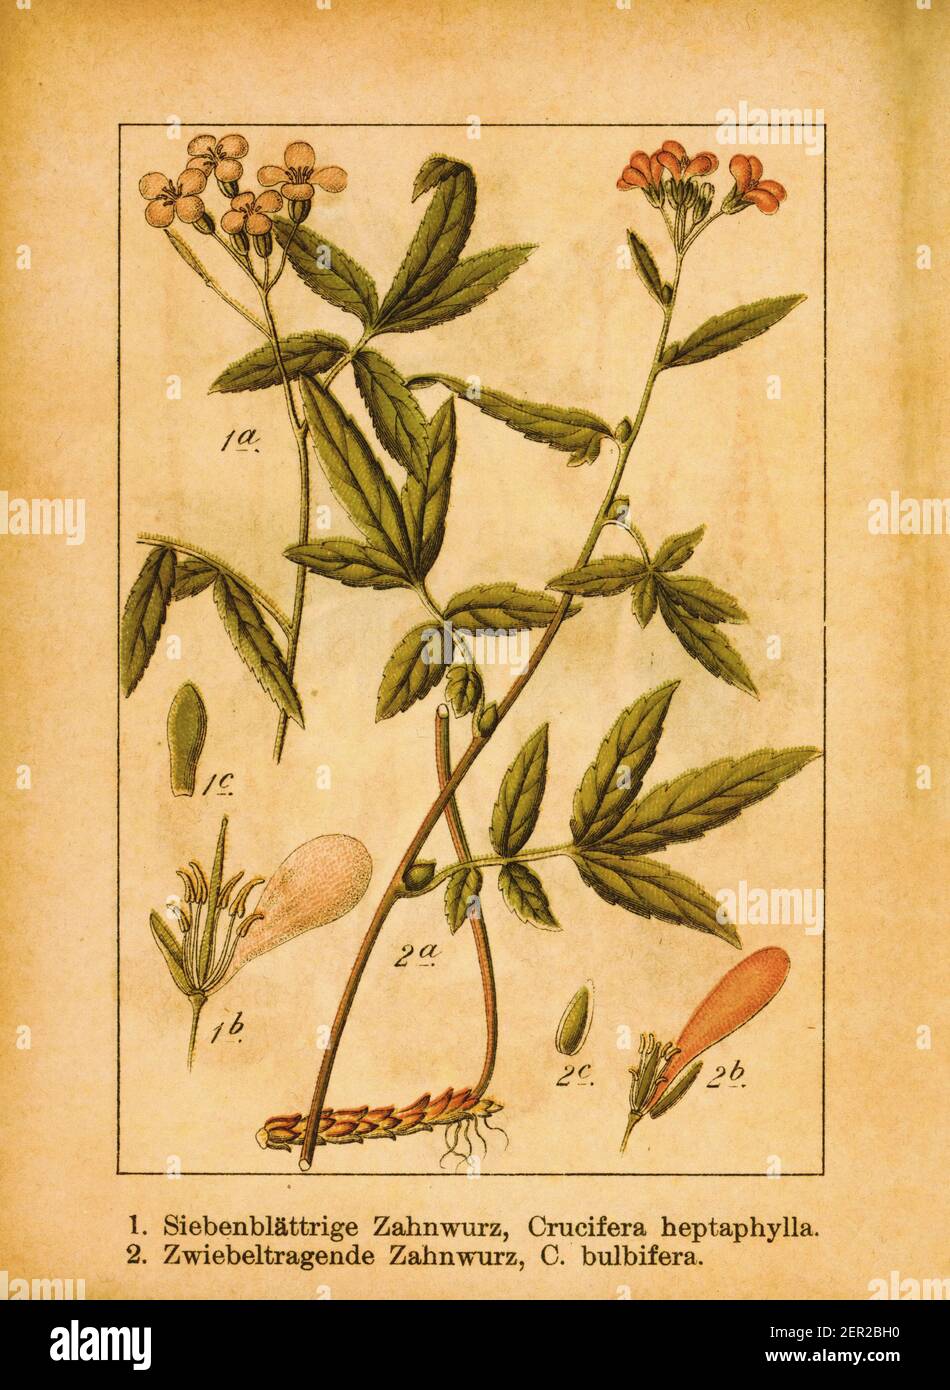 Antica illustrazione della cardamina eptaphilla e della corallroot bittercress. Incisione di Jacob Sturm (1771-1848) dal libro Deutschlands Flora in Abbi Foto Stock